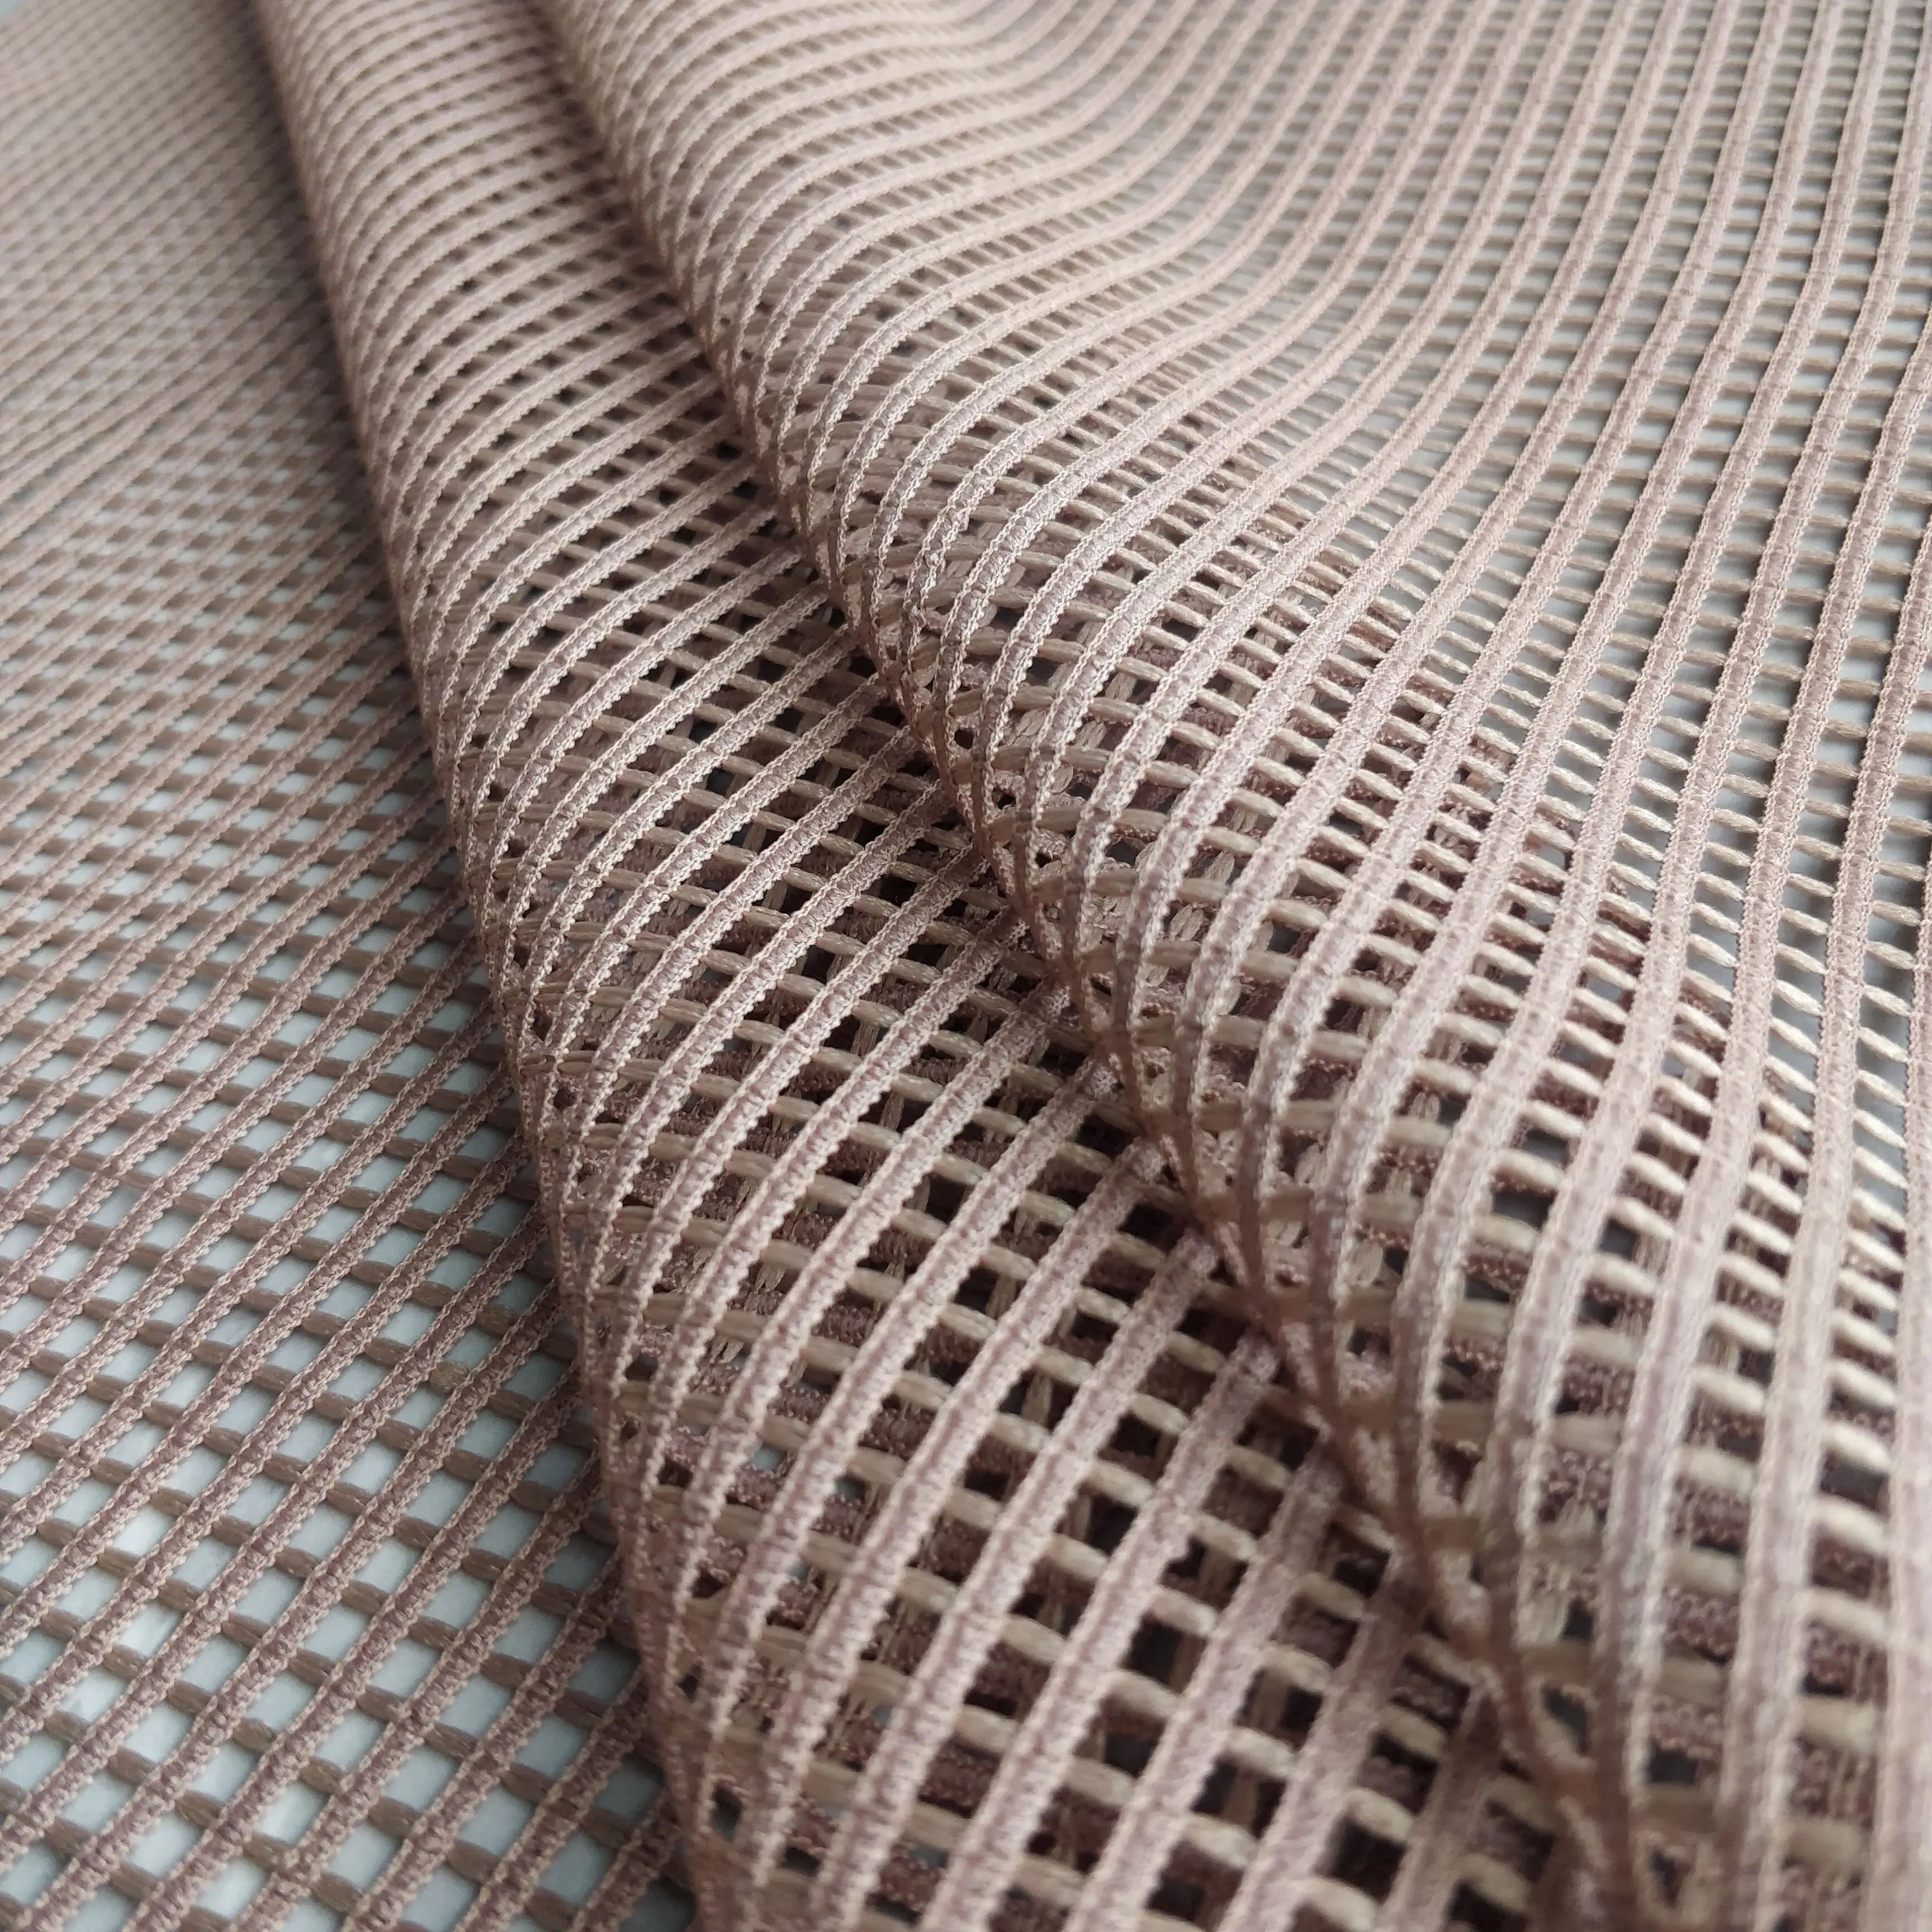 2019 Mùa Xuân Vải Polyester Lỗ Lớn Warp Lưới Vải Lưới Dệt Kim Hàng May Mặc Vải